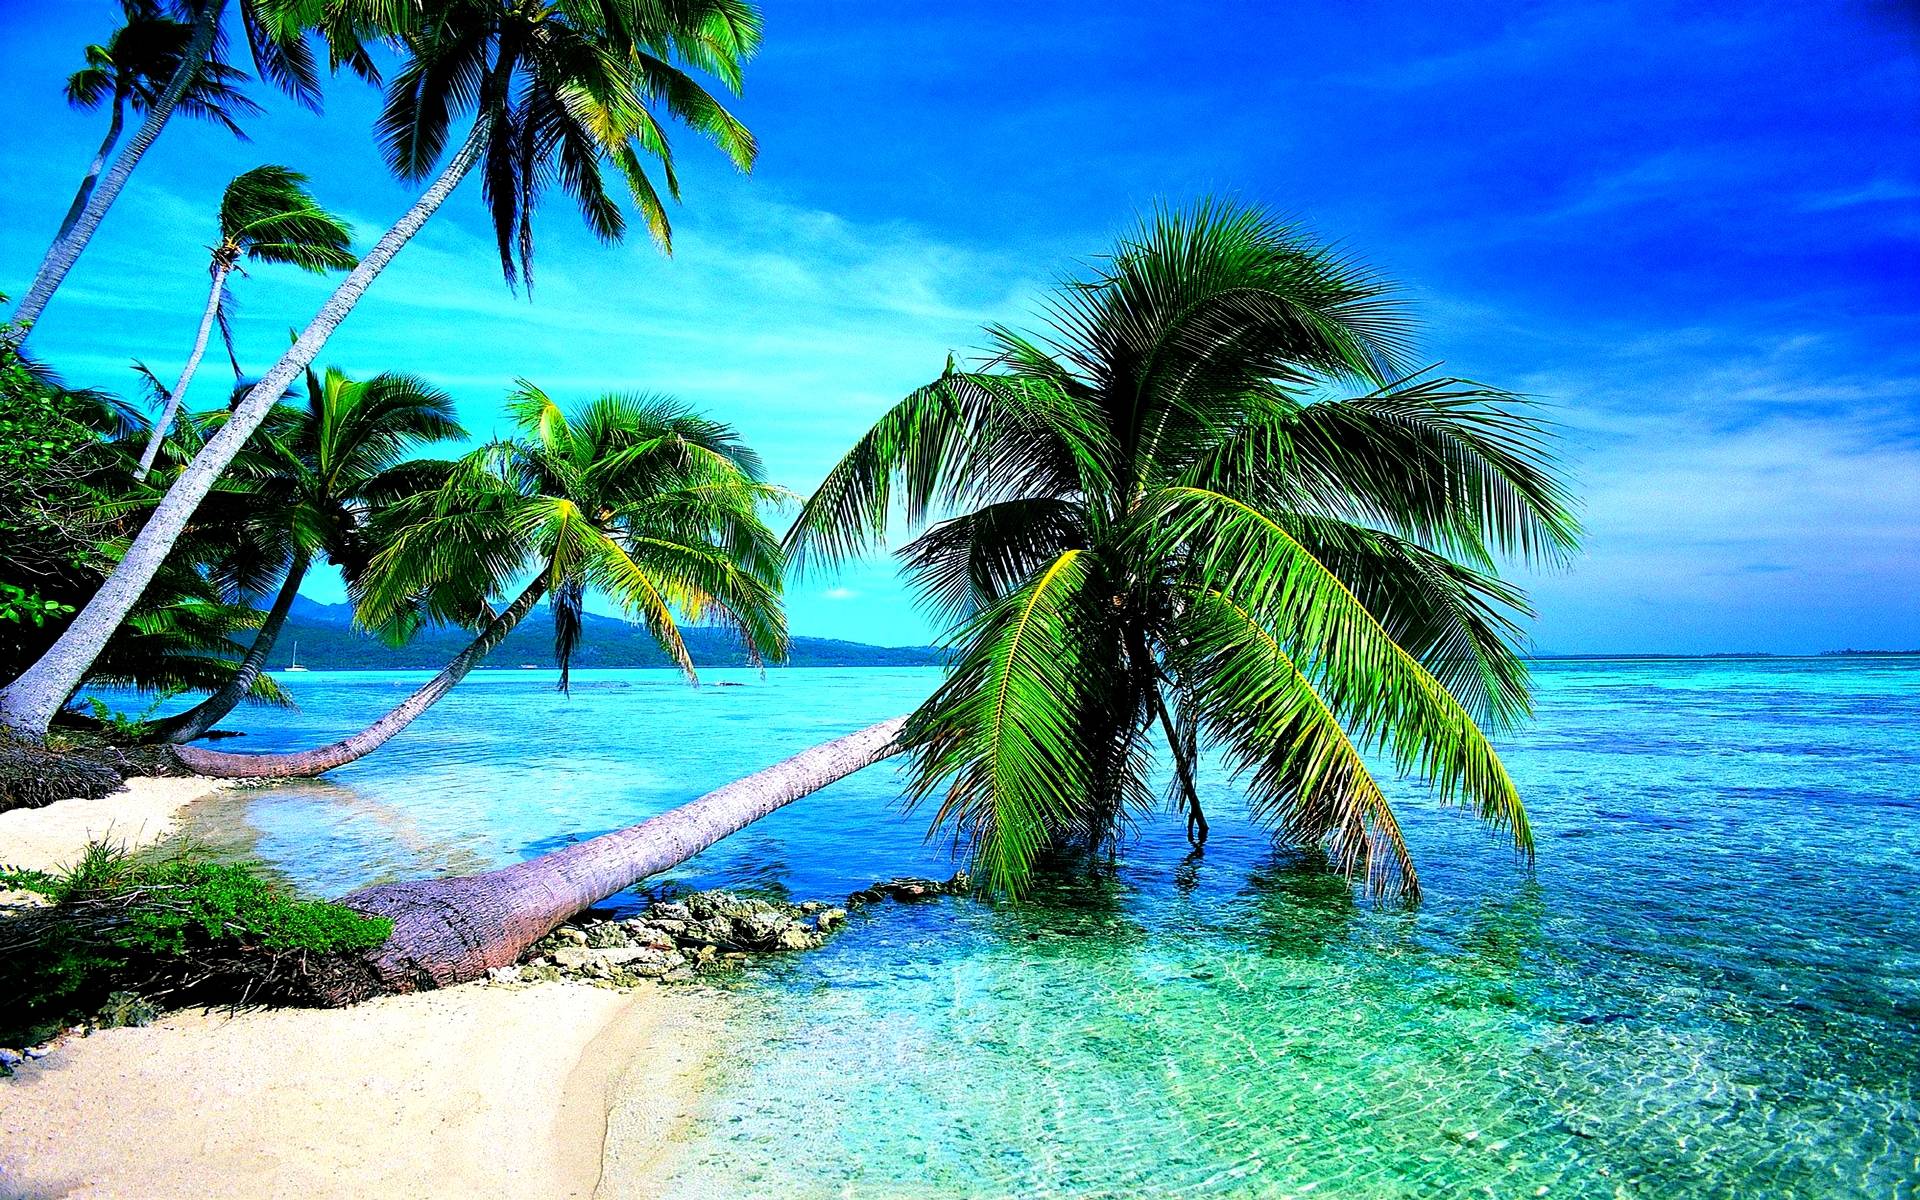 Tropical Beach HD Wallpaper. Tropical Beach Image